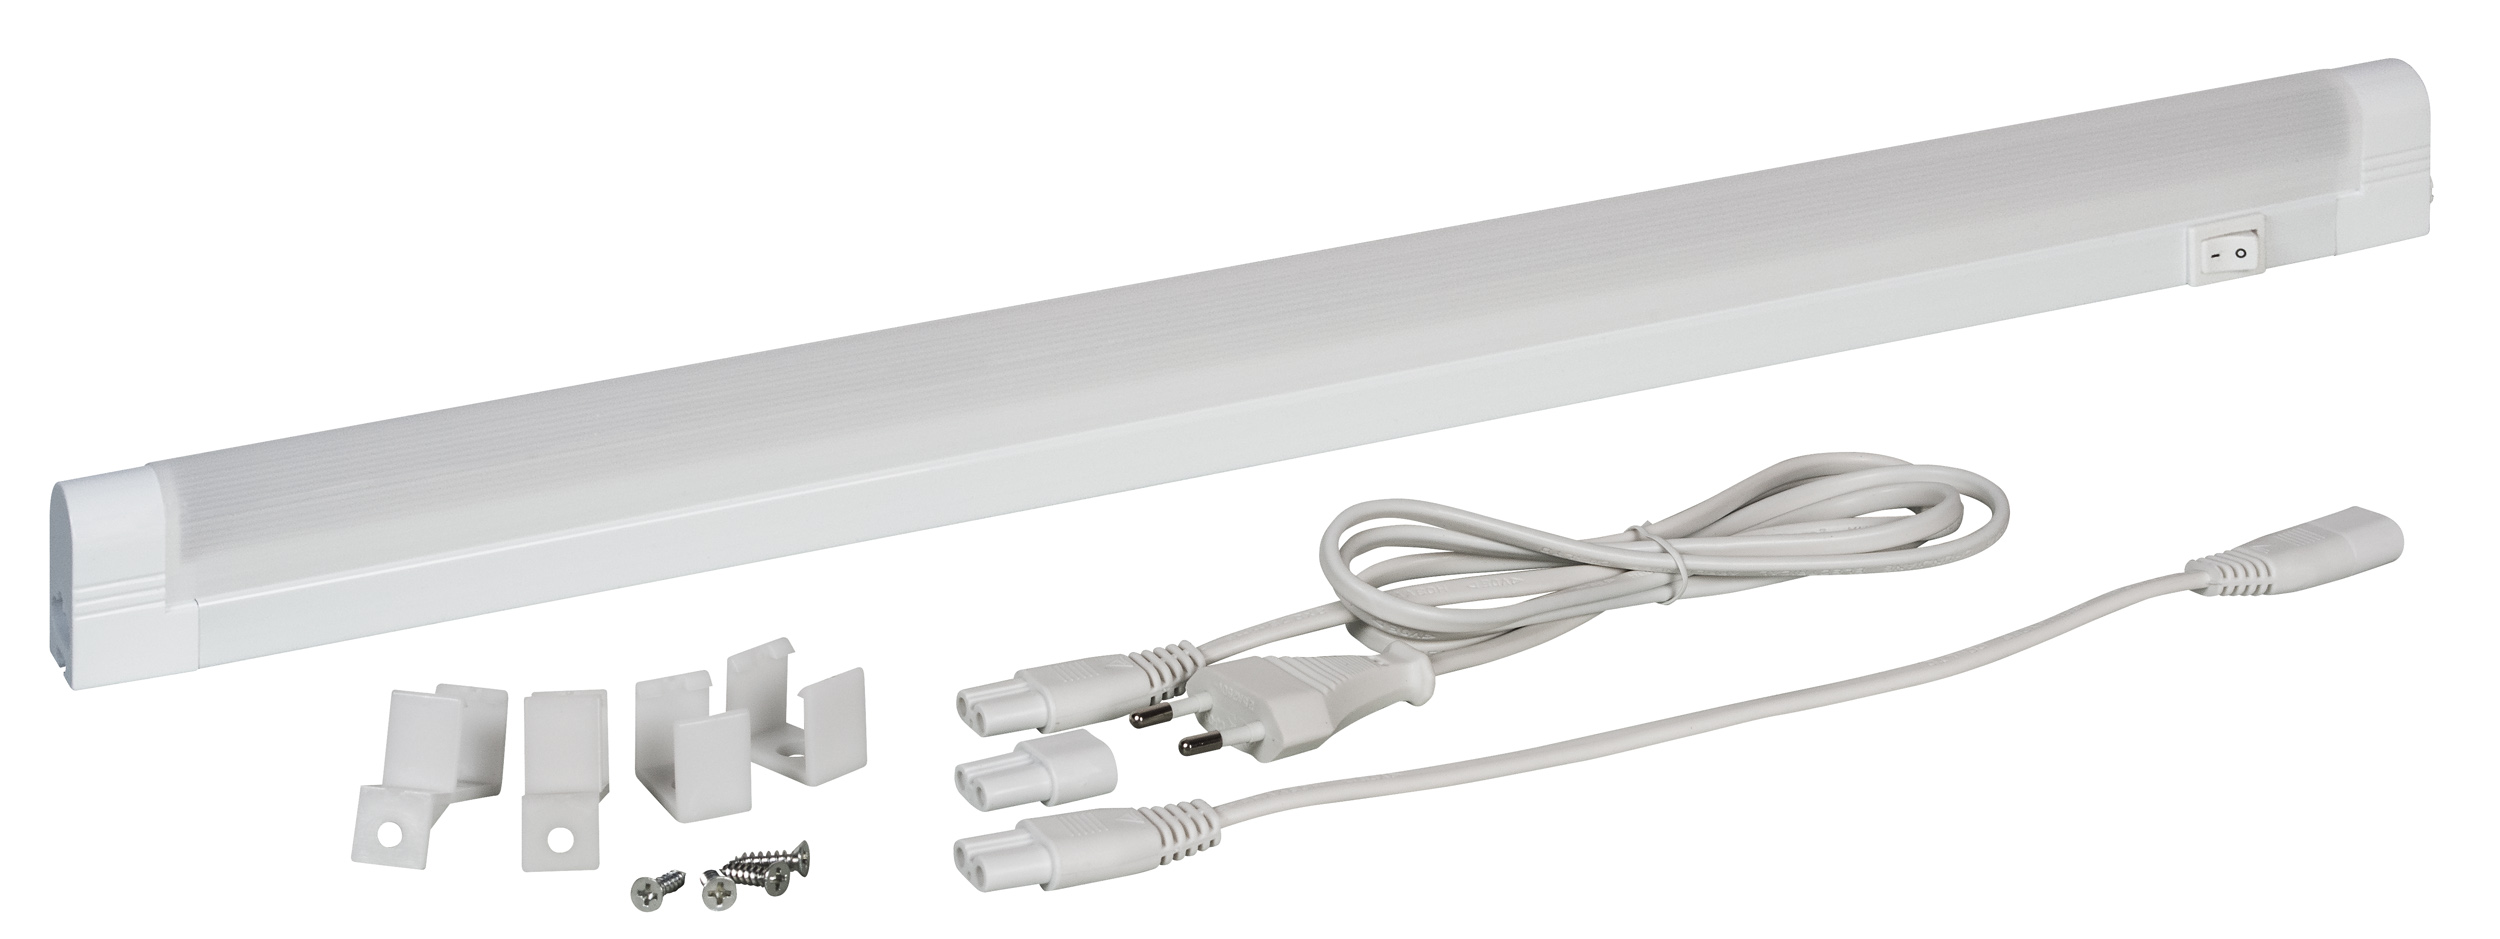 Müller Licht LED Unterbauleuchte Linex Switch Tone 30 weiß 4W 340lm Extra Warmweiß-Kaltweiß